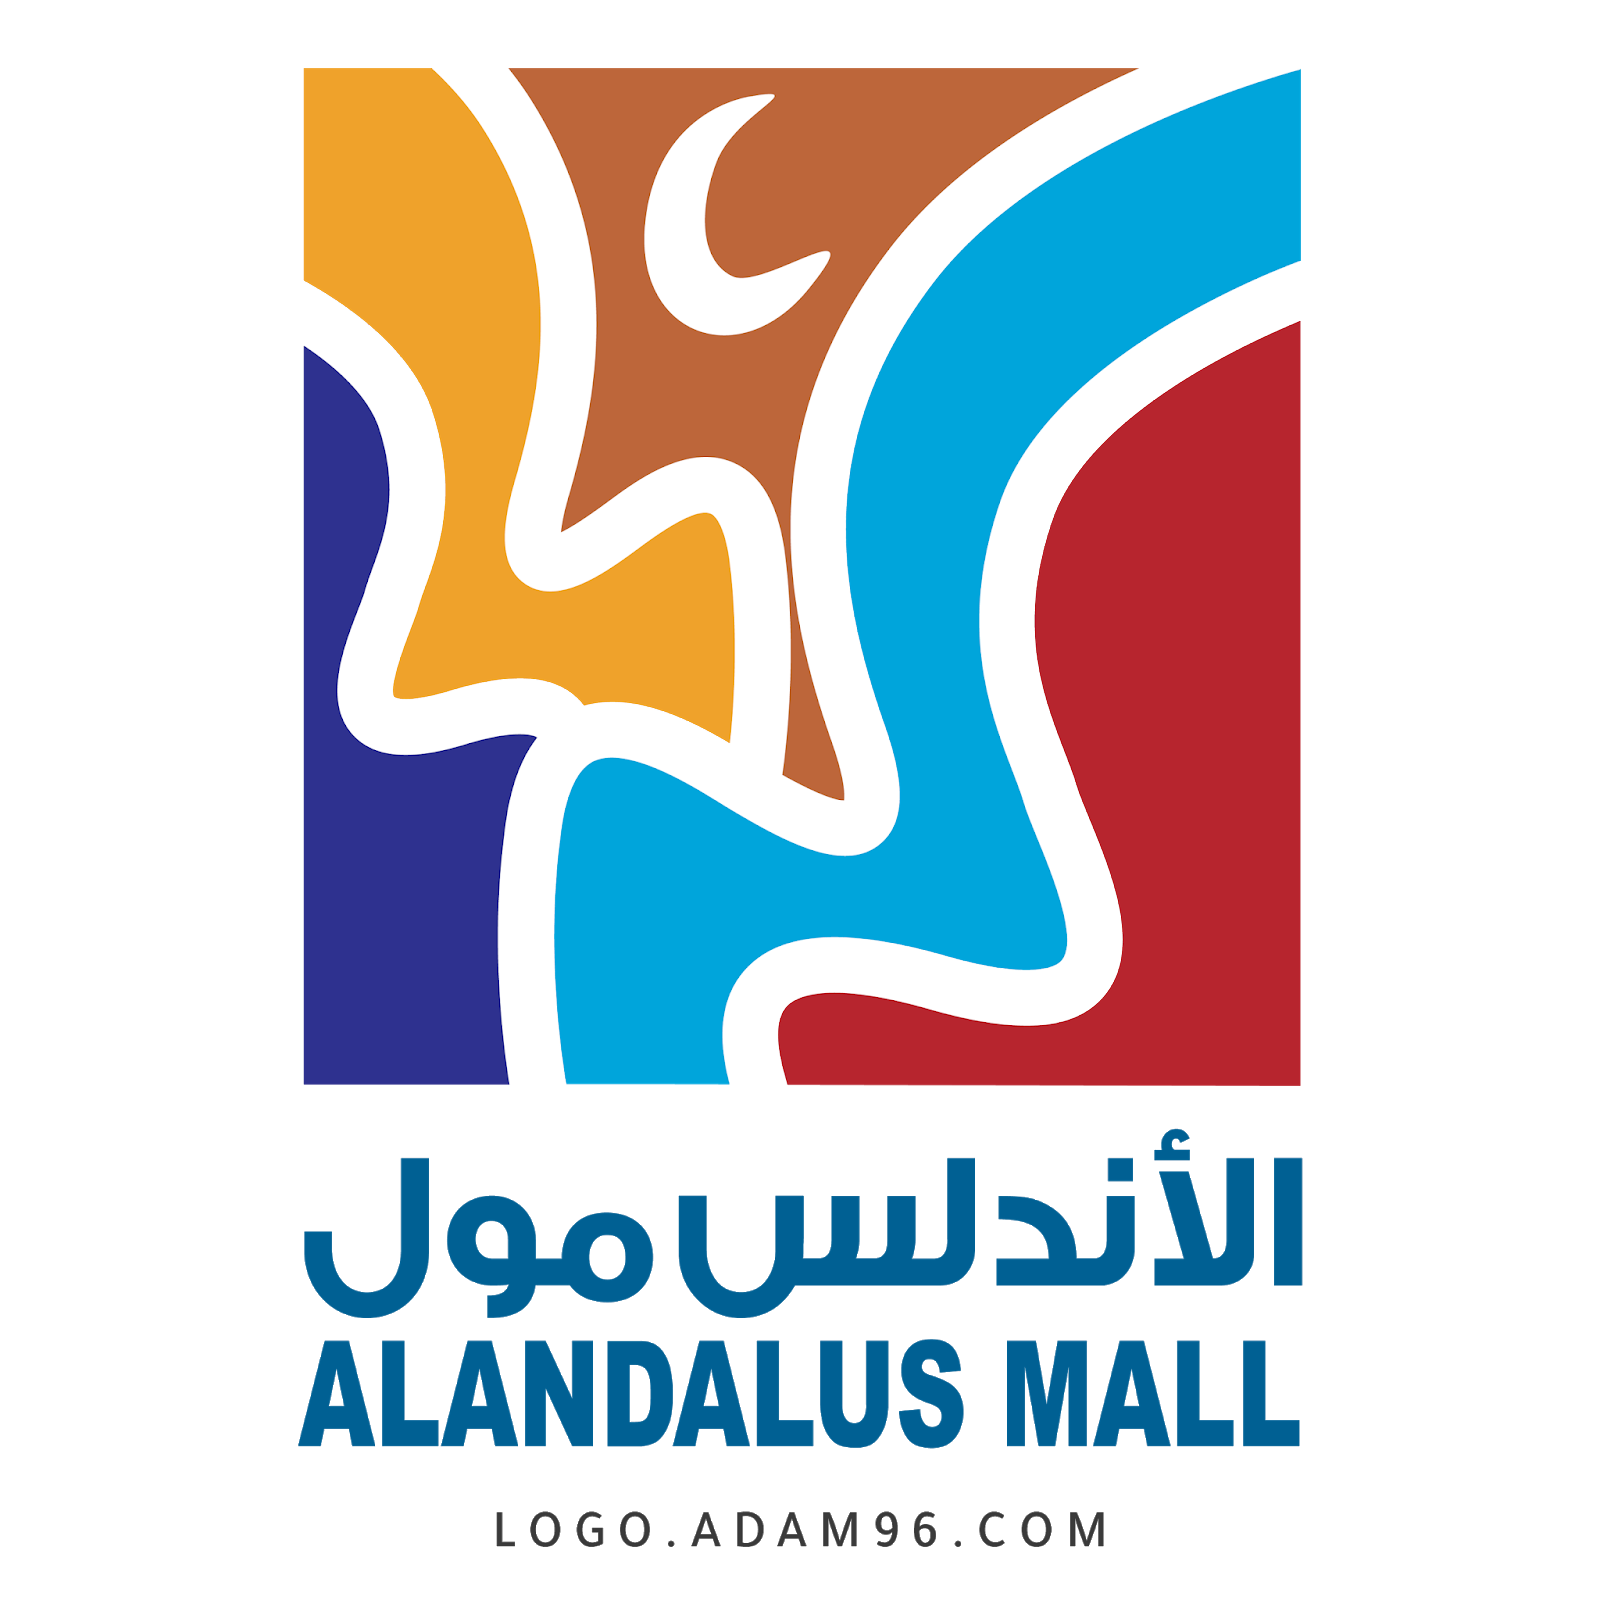 تحميل شعار الأندلس مول اكبر مركز تسوق في السعودية Png